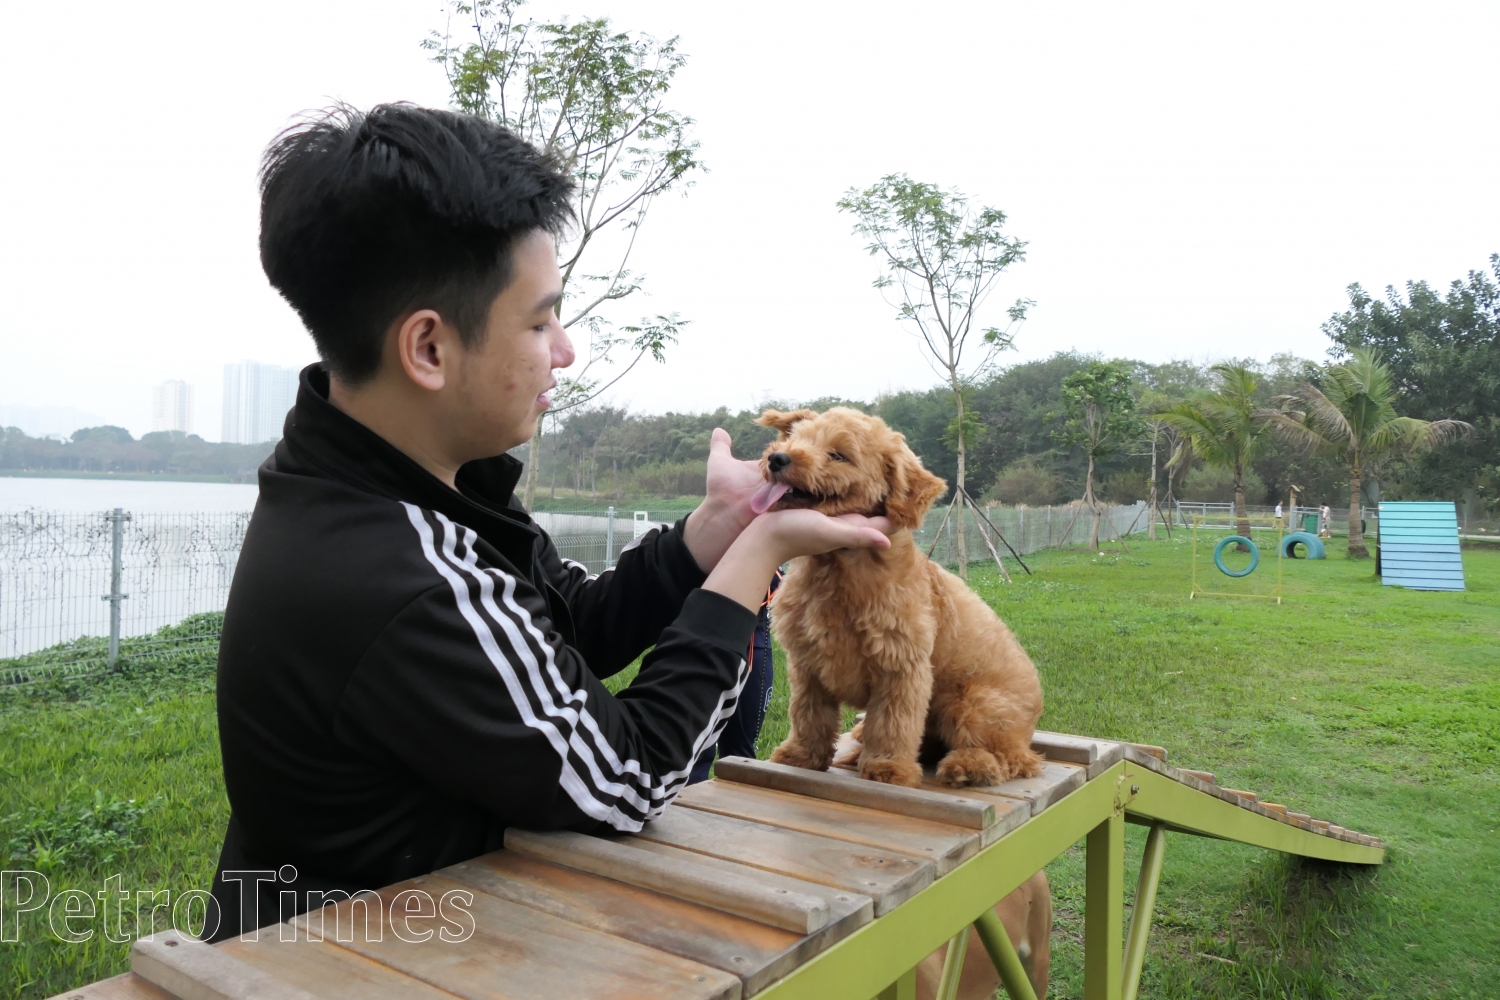 Công viên dành cho chó đầu tiên tại Hà Nội